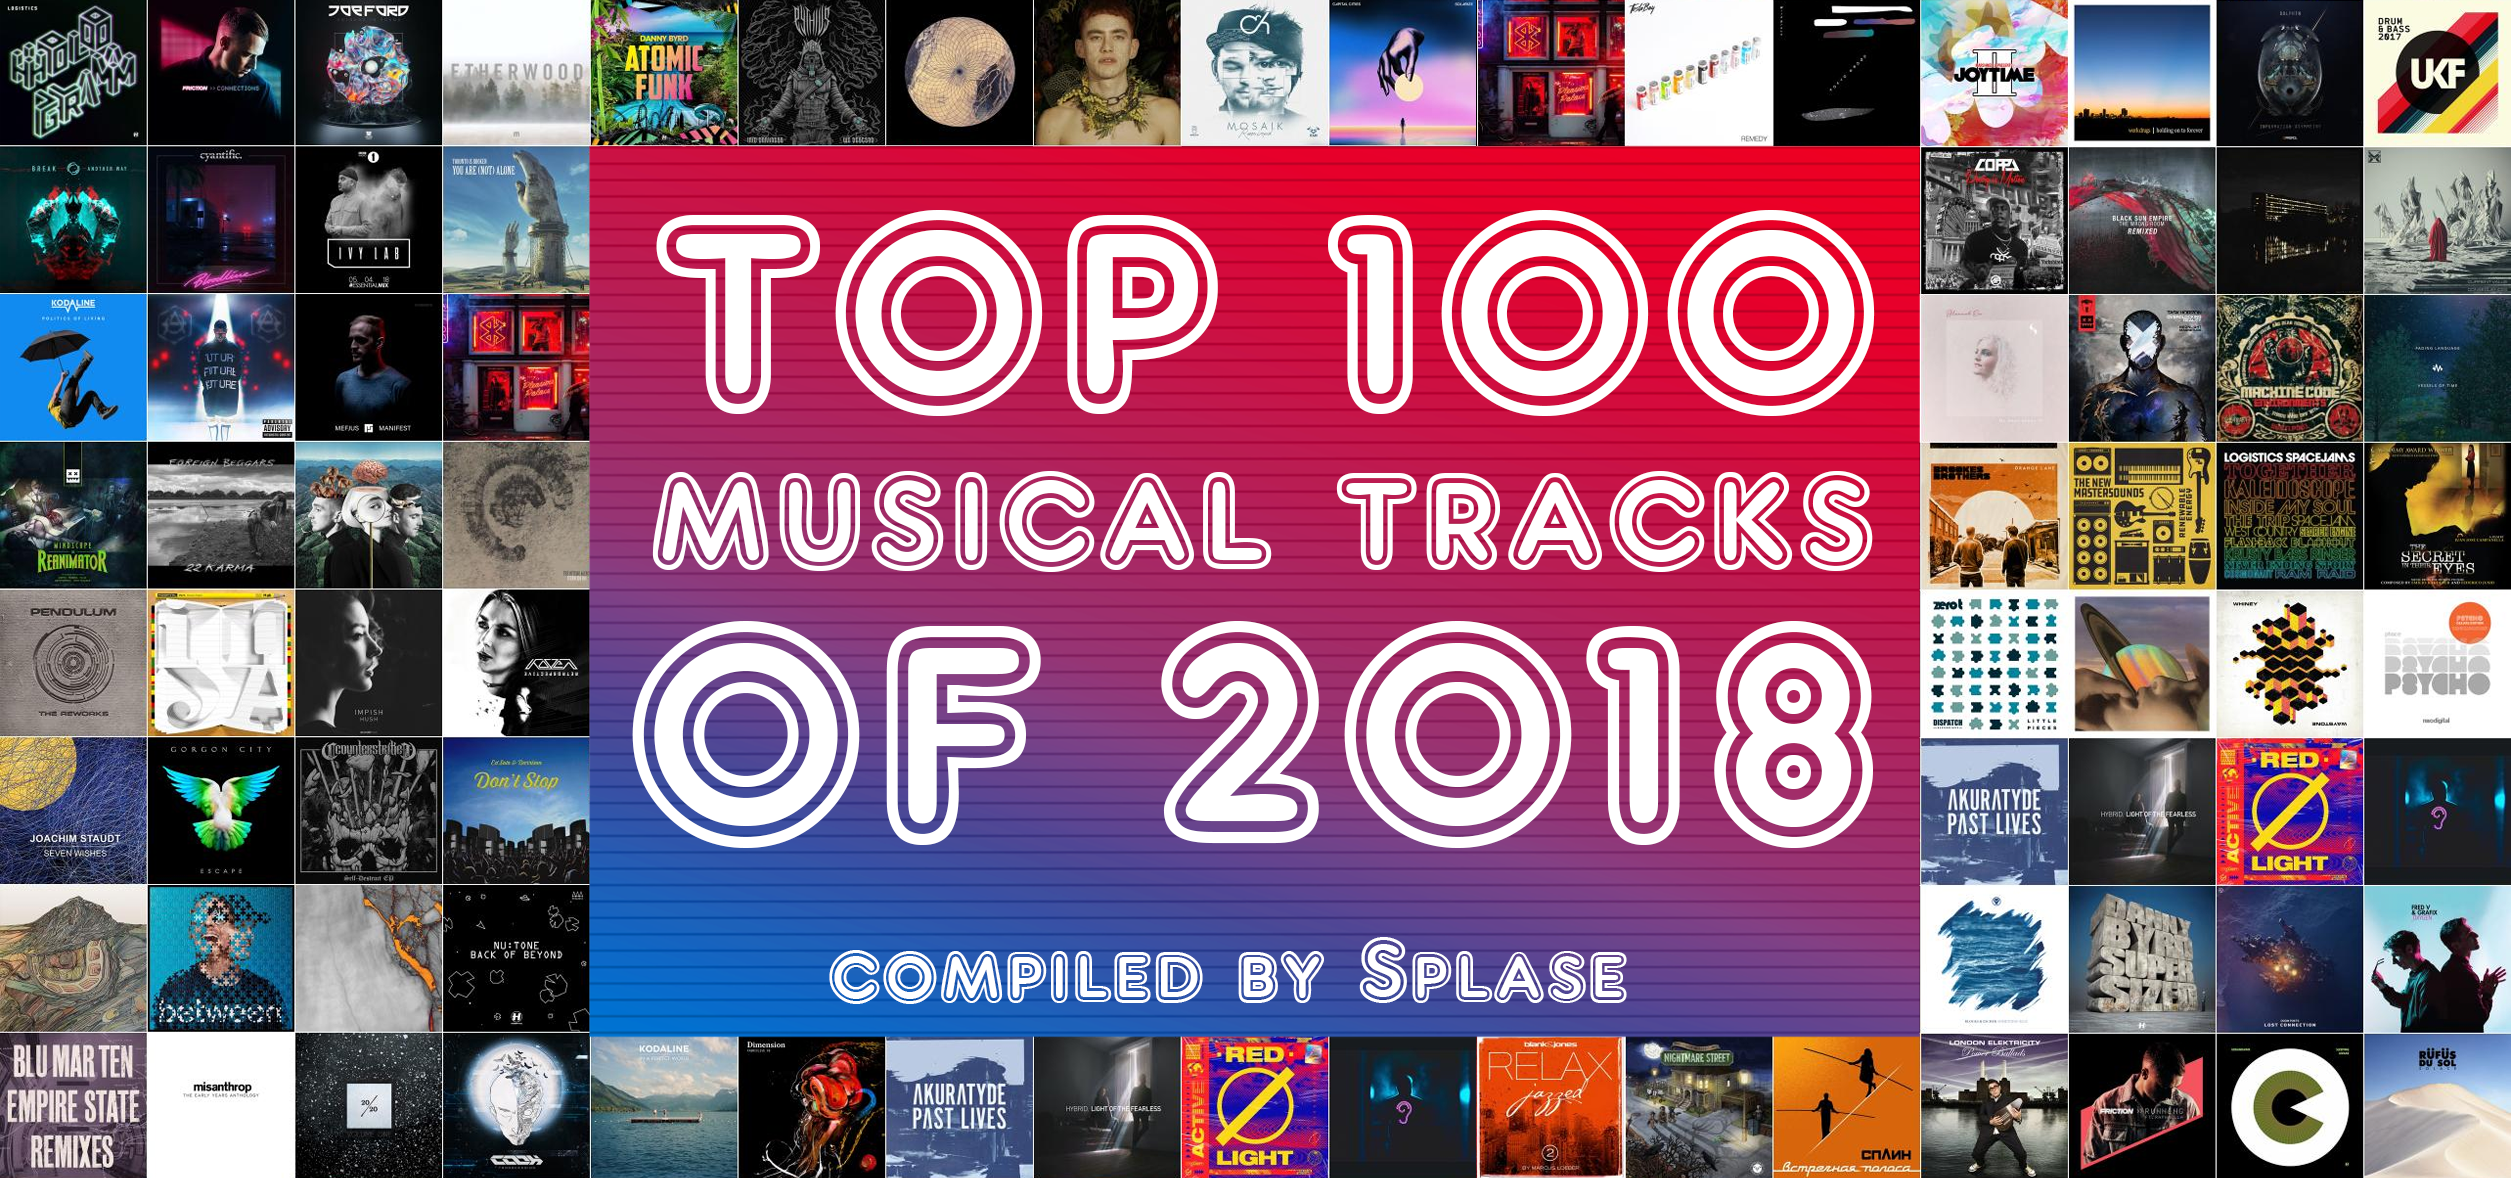 ТОП 100 Музыкальных треков 2018 года по моей версии / TOP 100 Musical Tracks of 2018 compiled by Splase